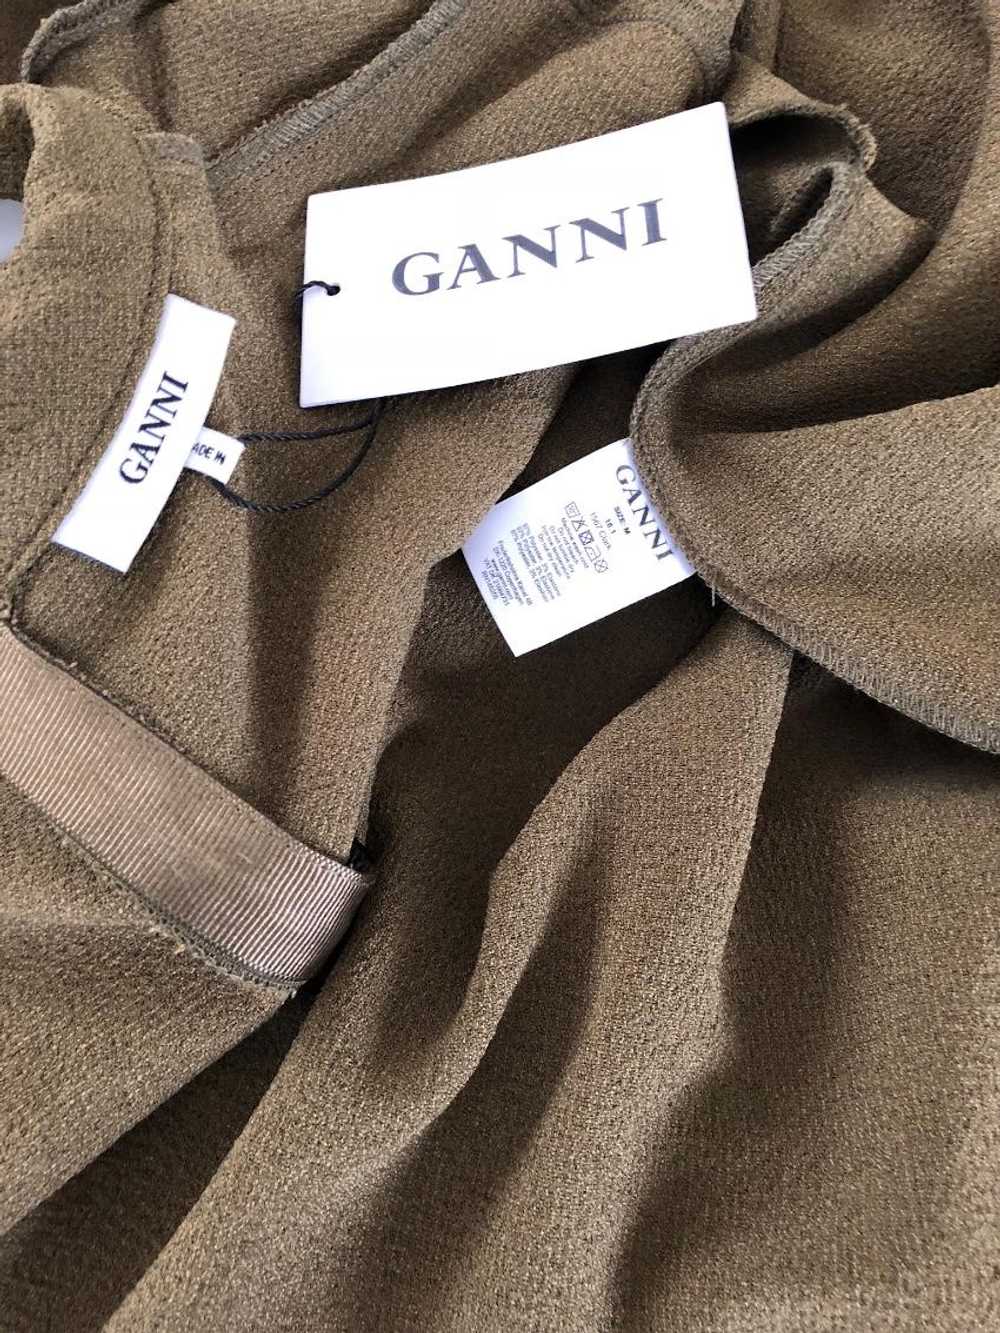 Ganni GANNI olive green crepe dress - image 5